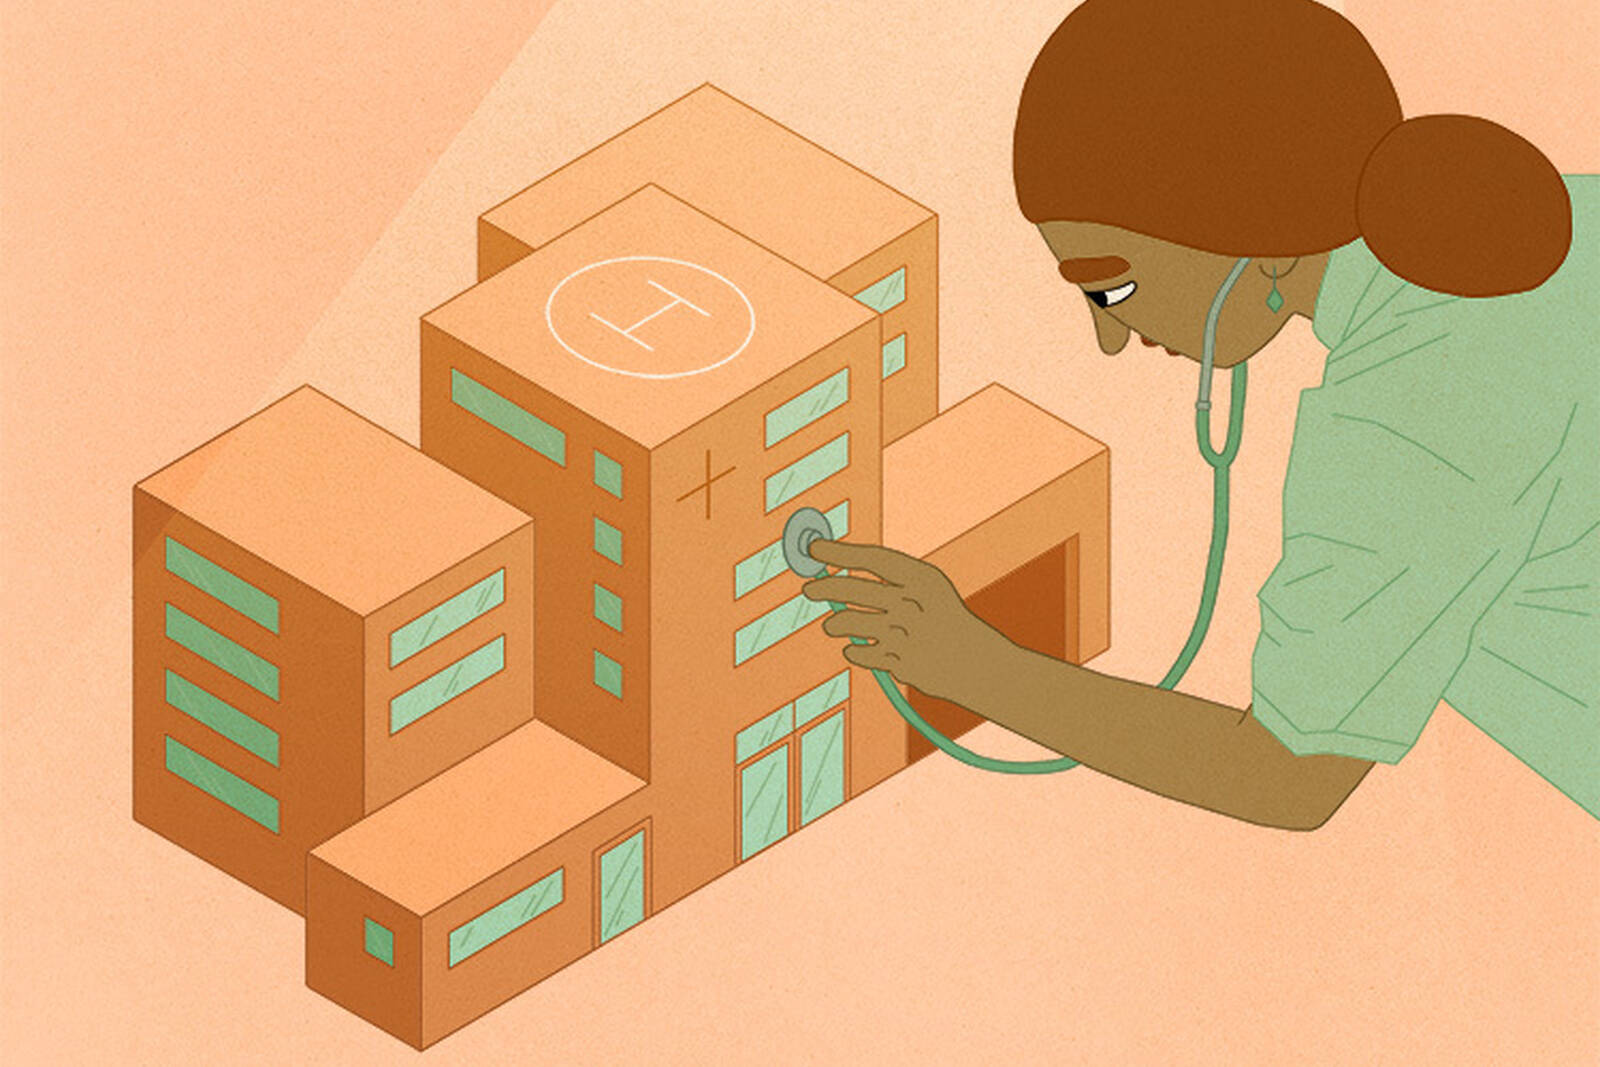 A nurse uses a stethoscope on a hospital building.